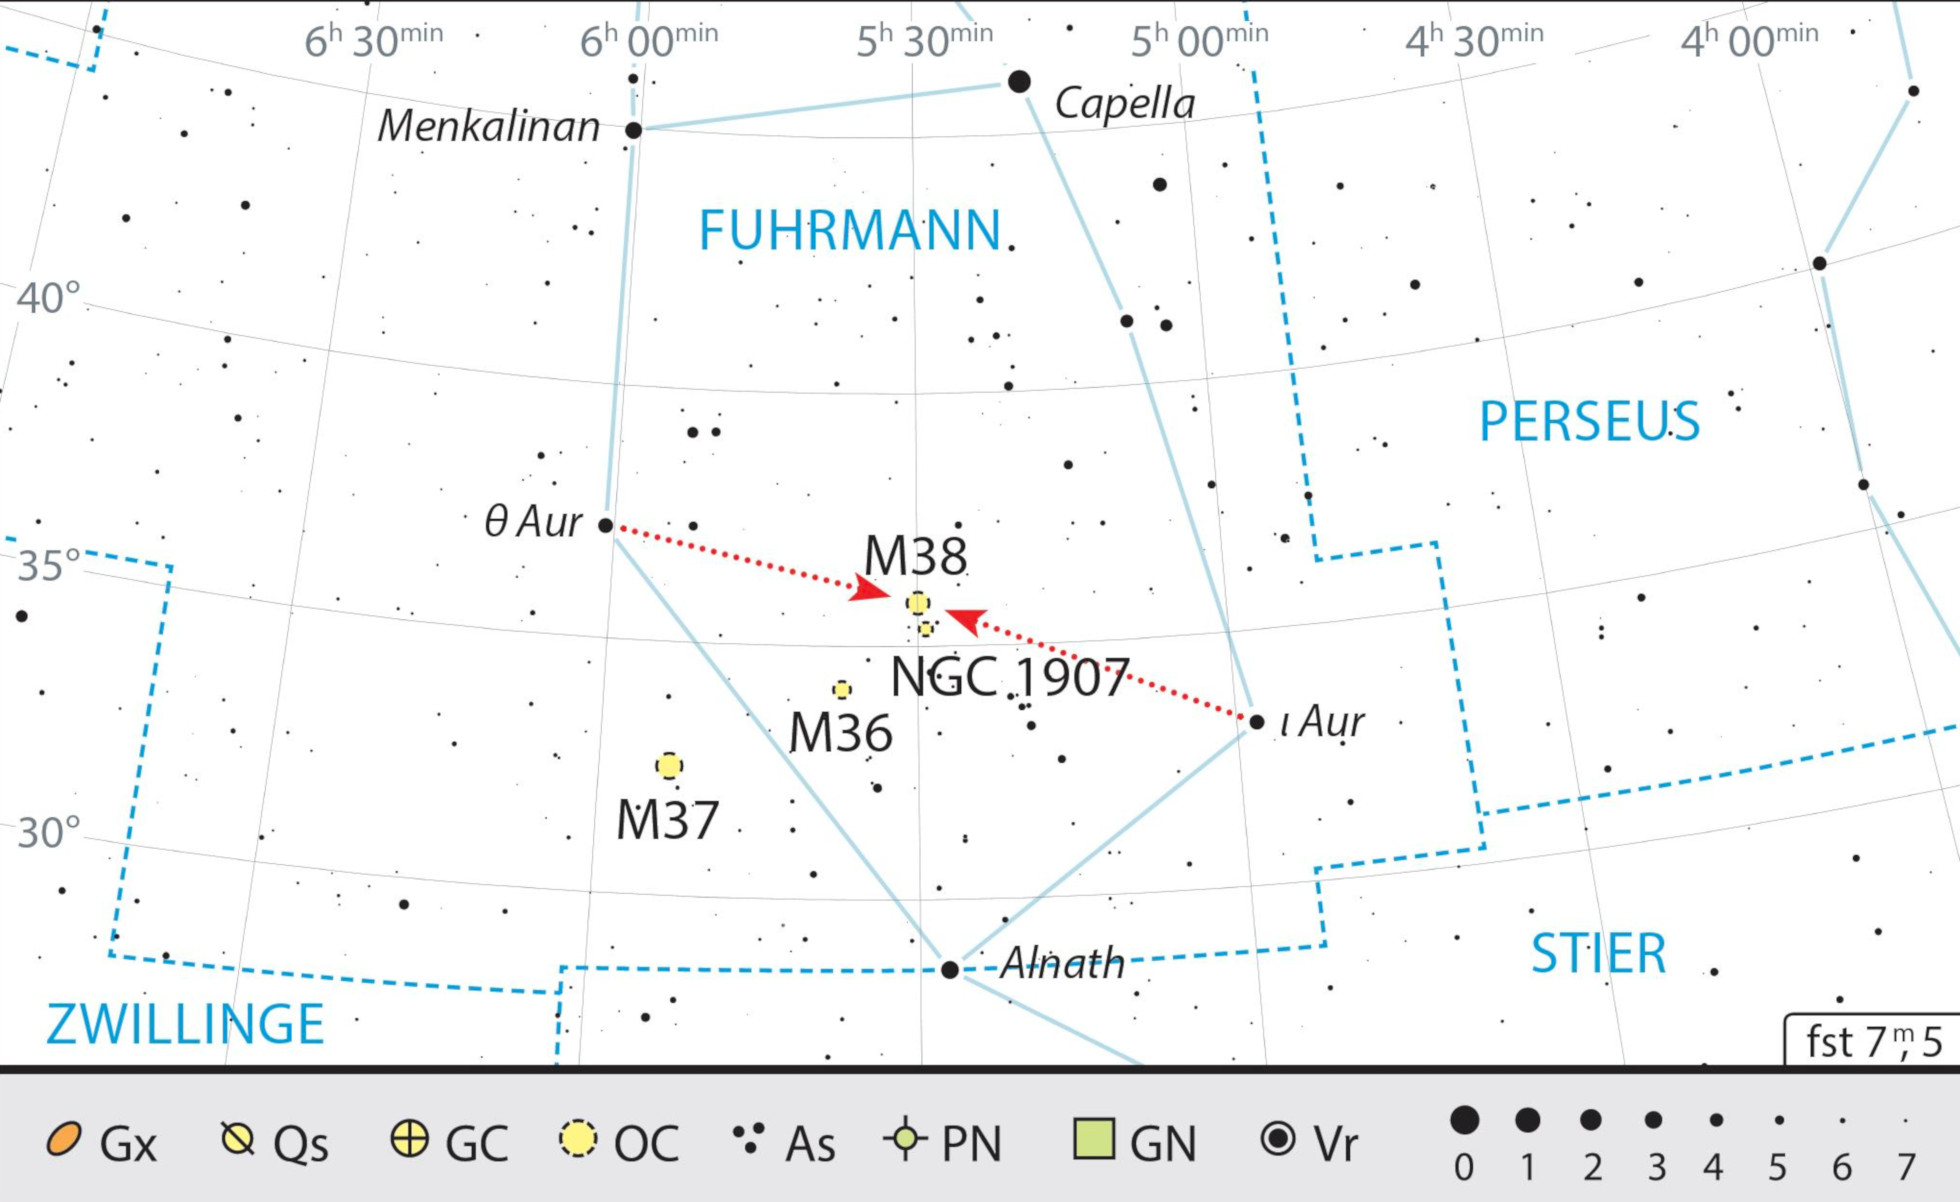 Cele două roiuri de stele pot fi găsite cu ușurință chiar între stelele ι și θ Aur. J. Scholten